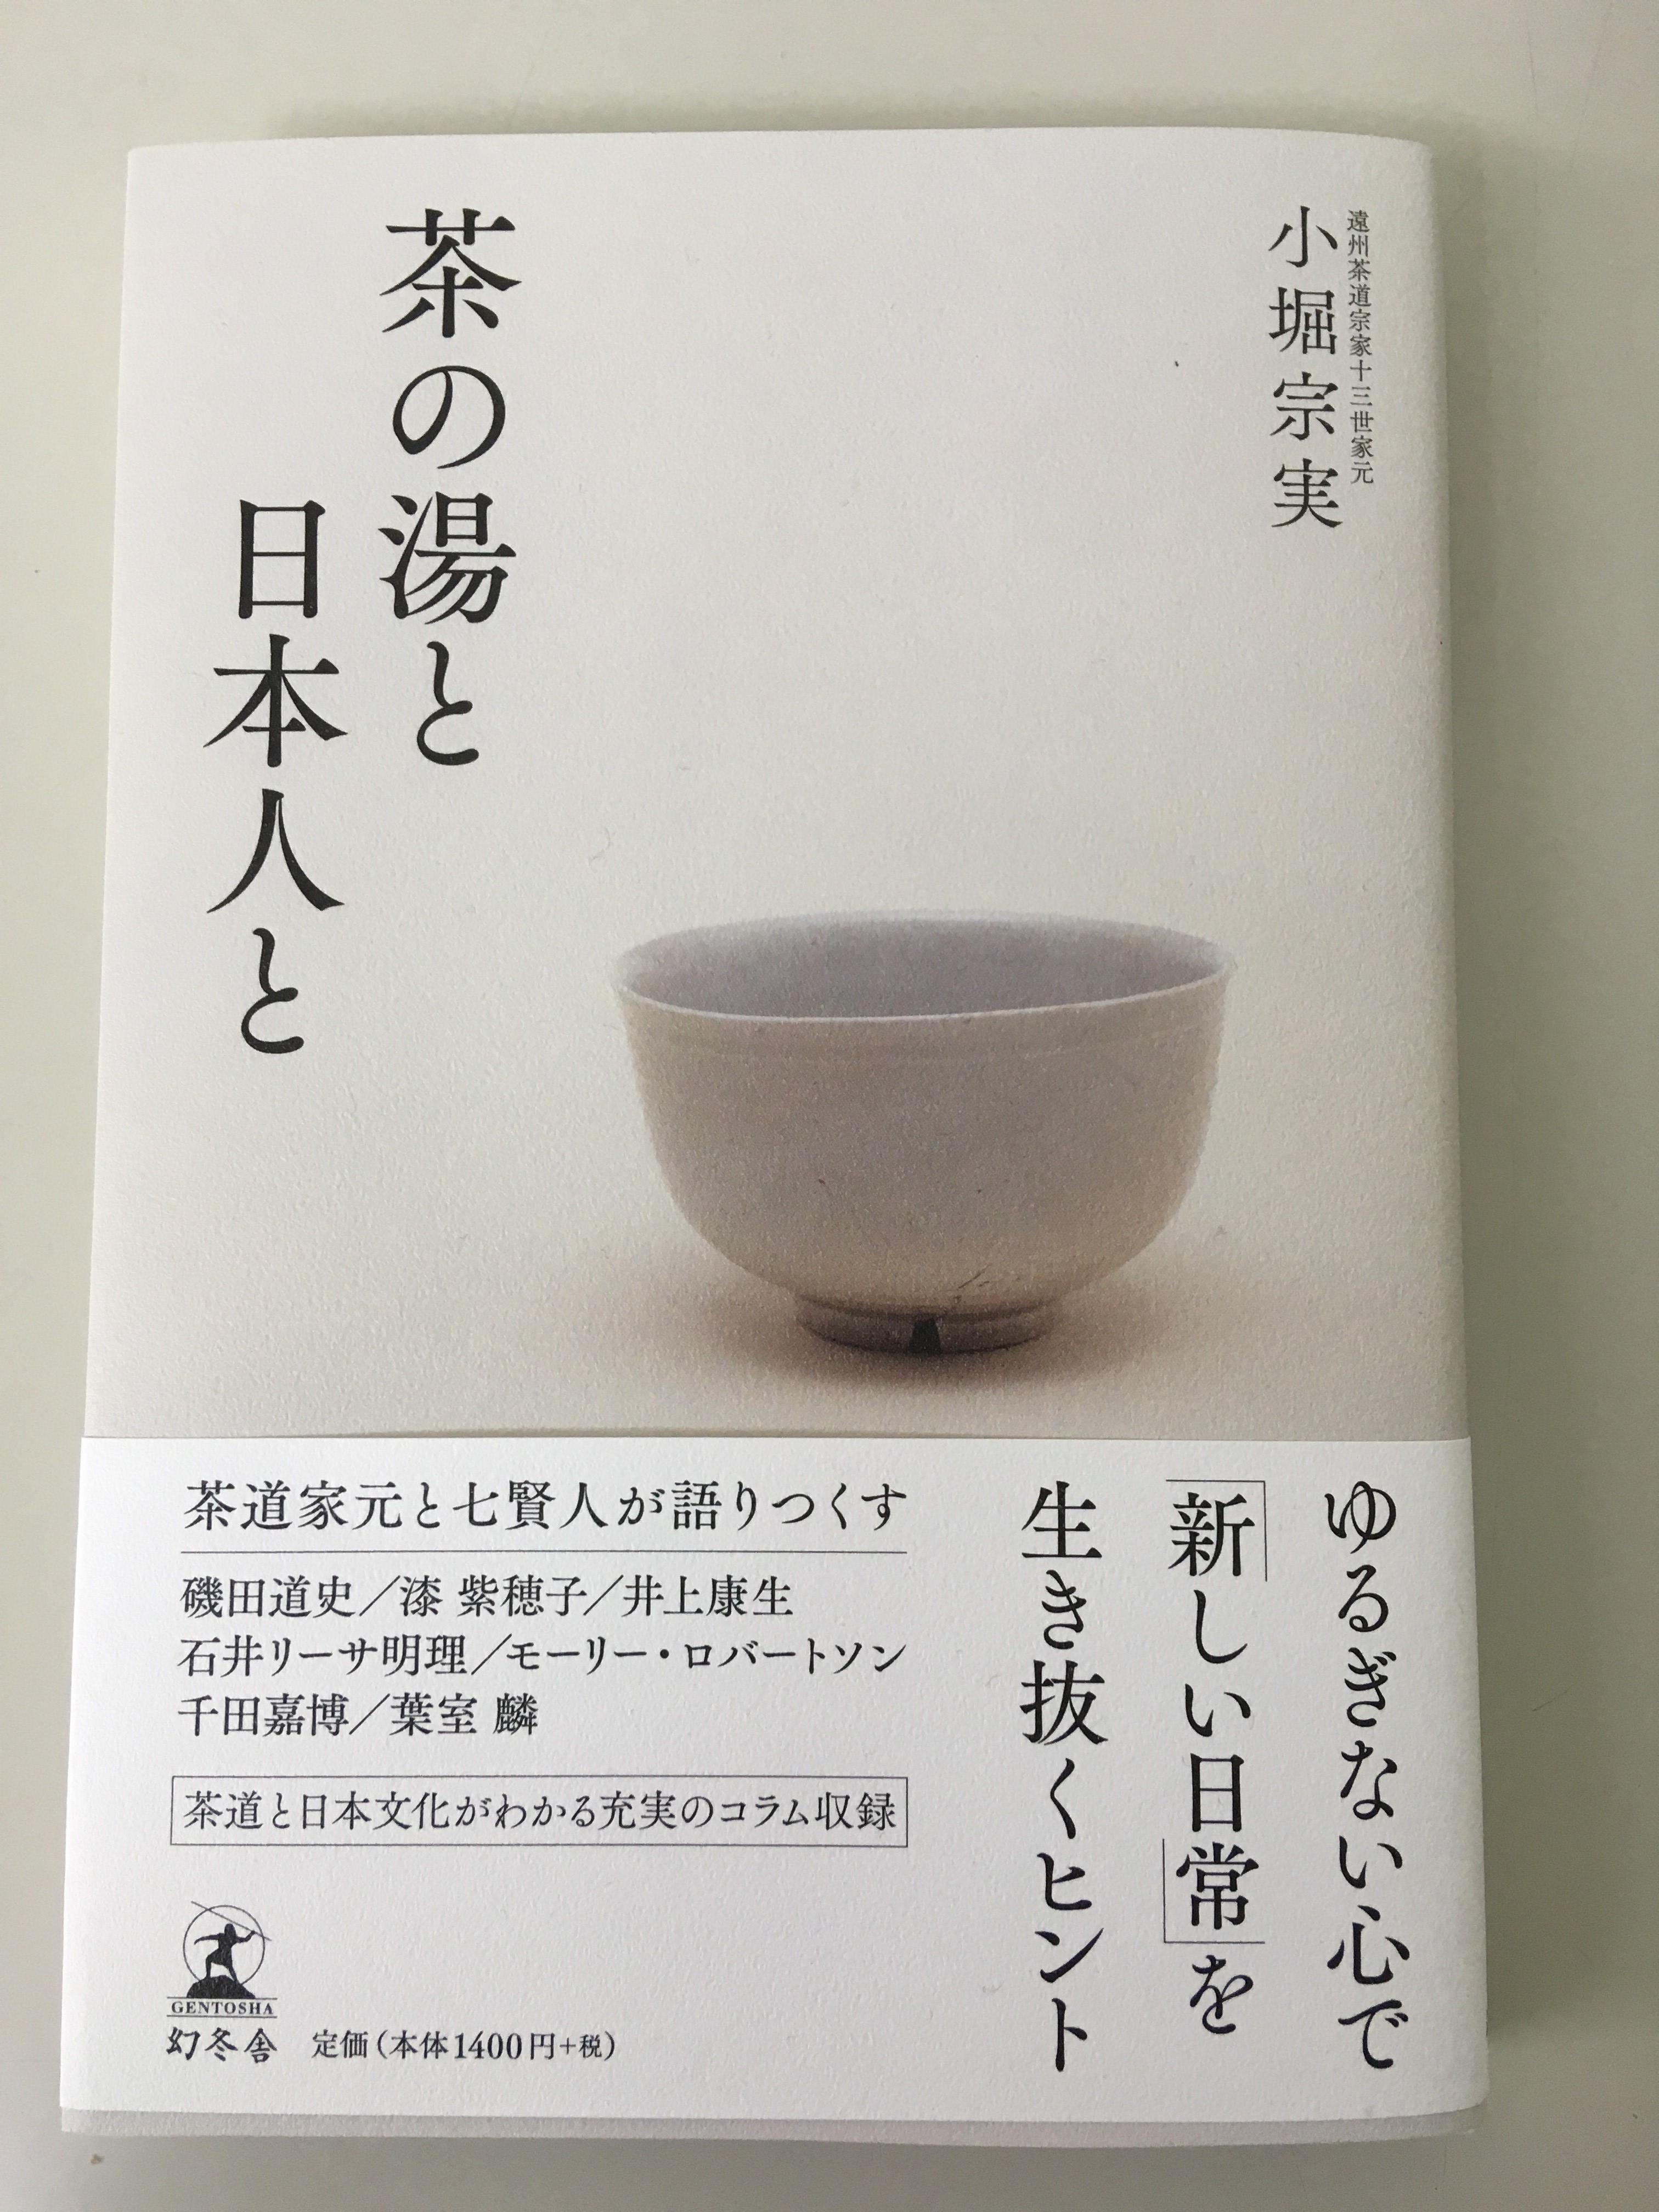 茶の湯と日本人と – 茶道情報提サイト「遠州WEBマガジン」